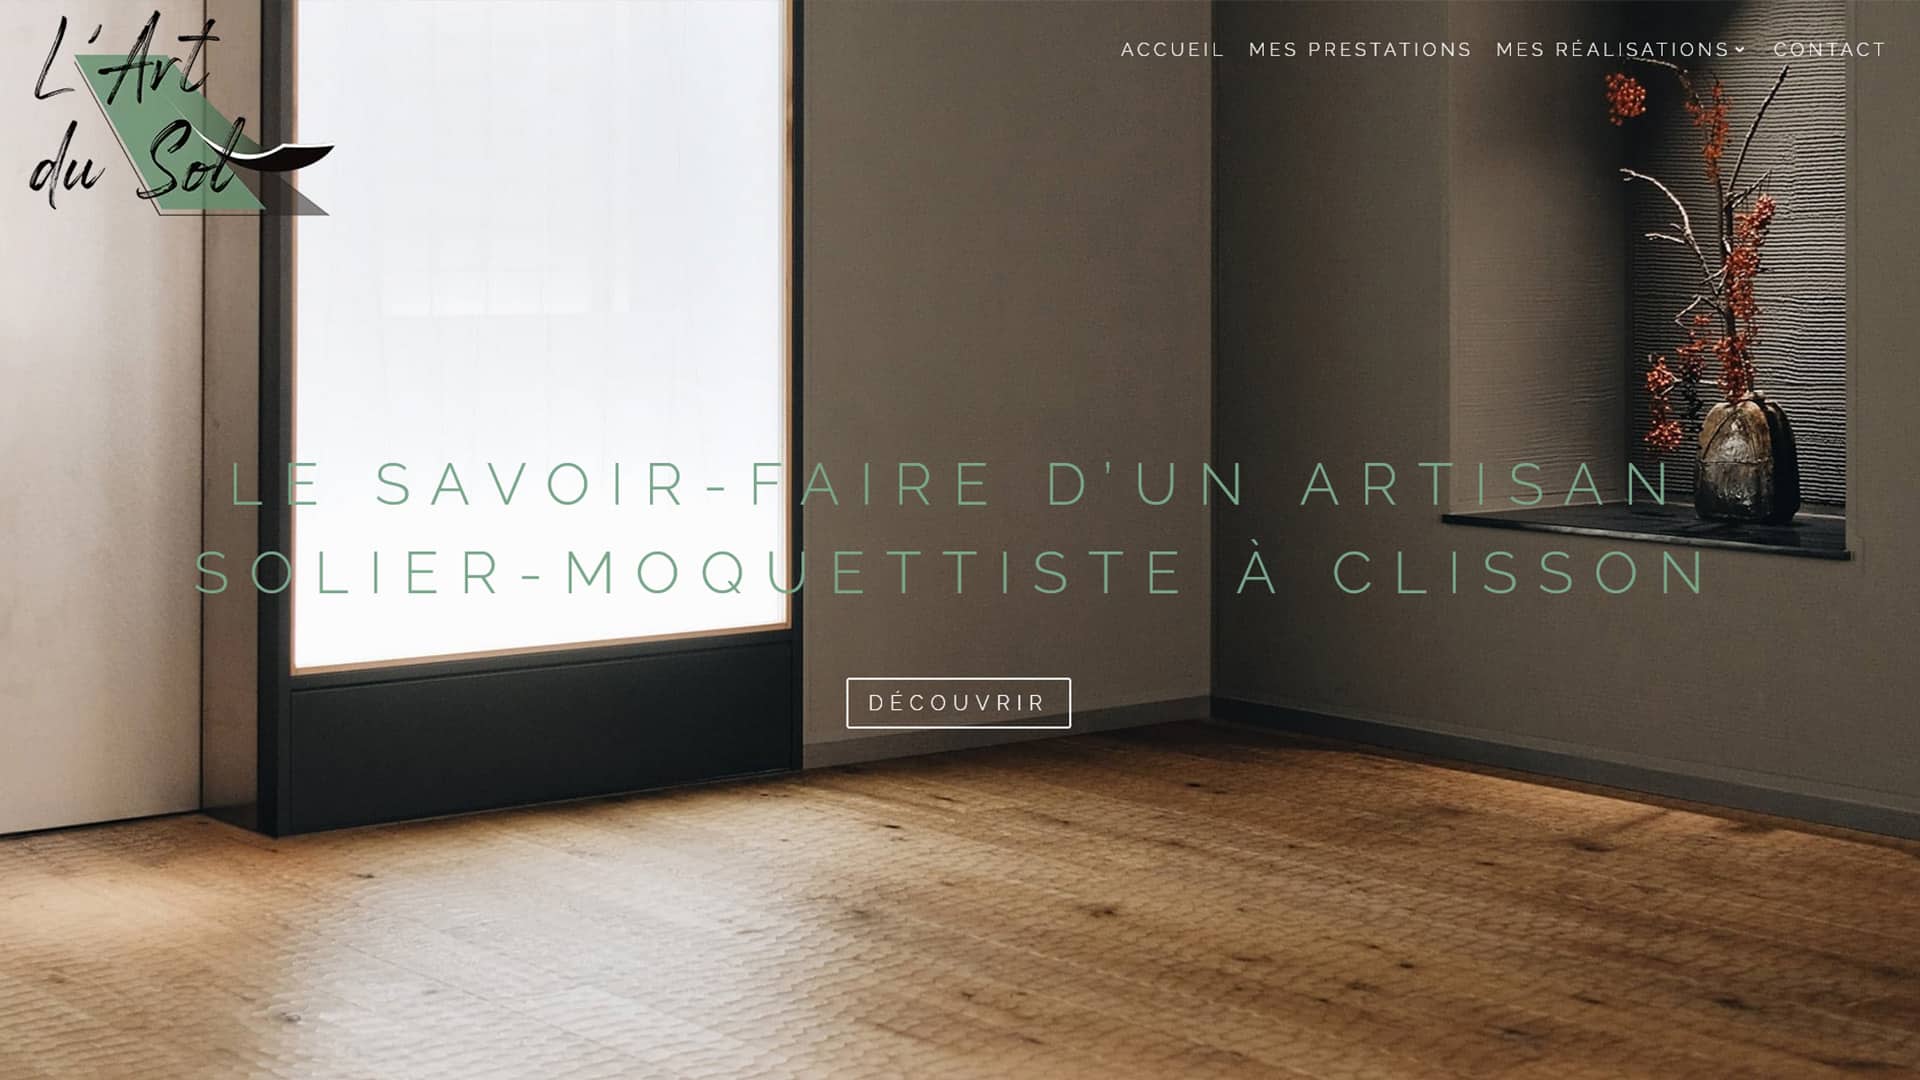 réalisation site internet vitrine solier moquettiste Loire Atlantique